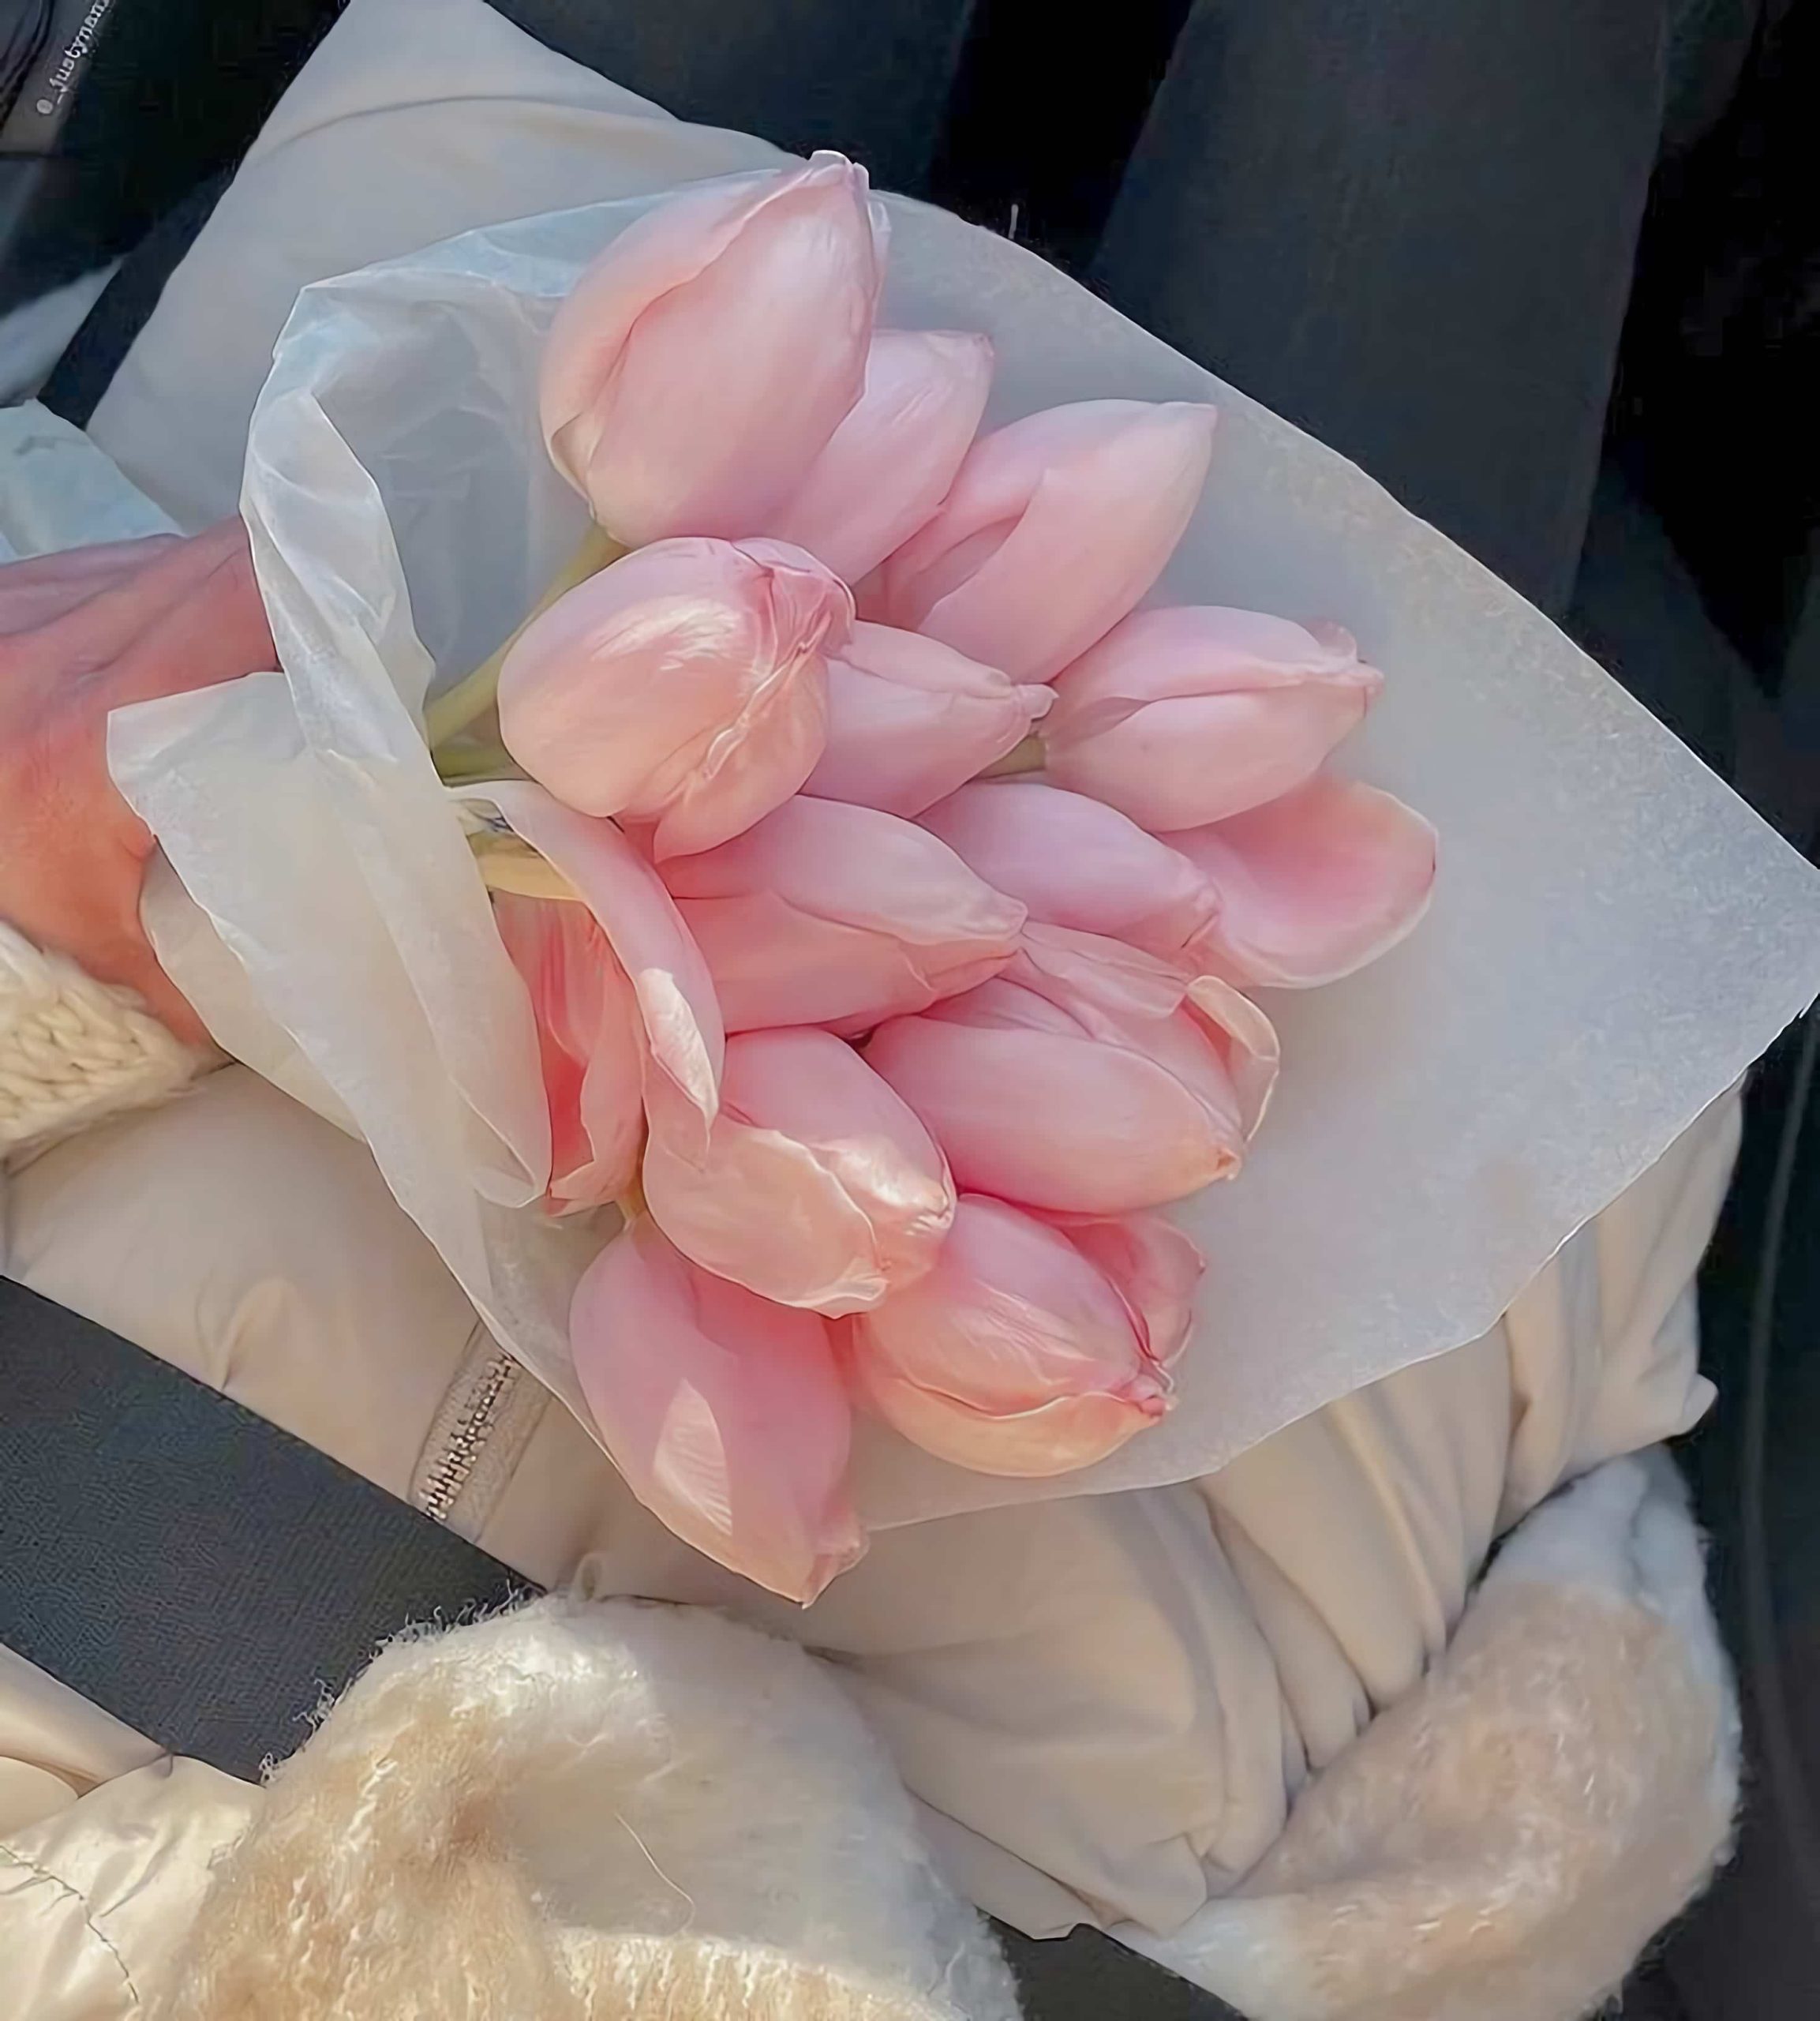 粉色郁金香真实照片 朋友圈发春天花朵绝美配图_1